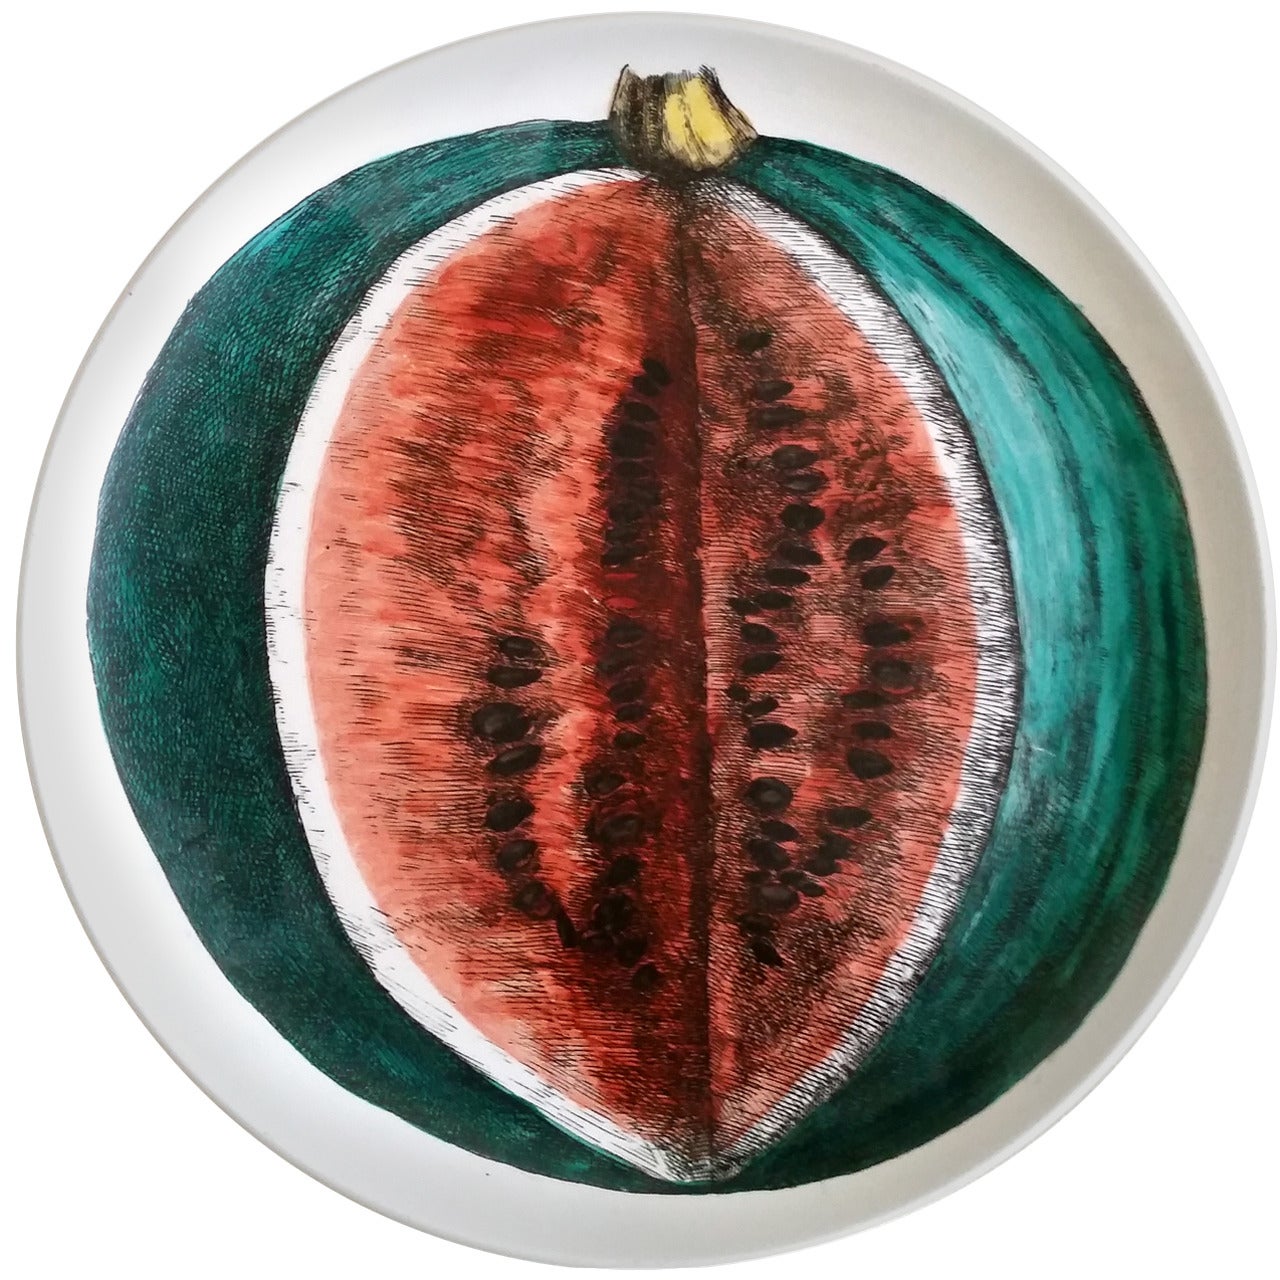 Piero Fornasetti  Sezioni Di Frutta Plate Depicting a Watermelon